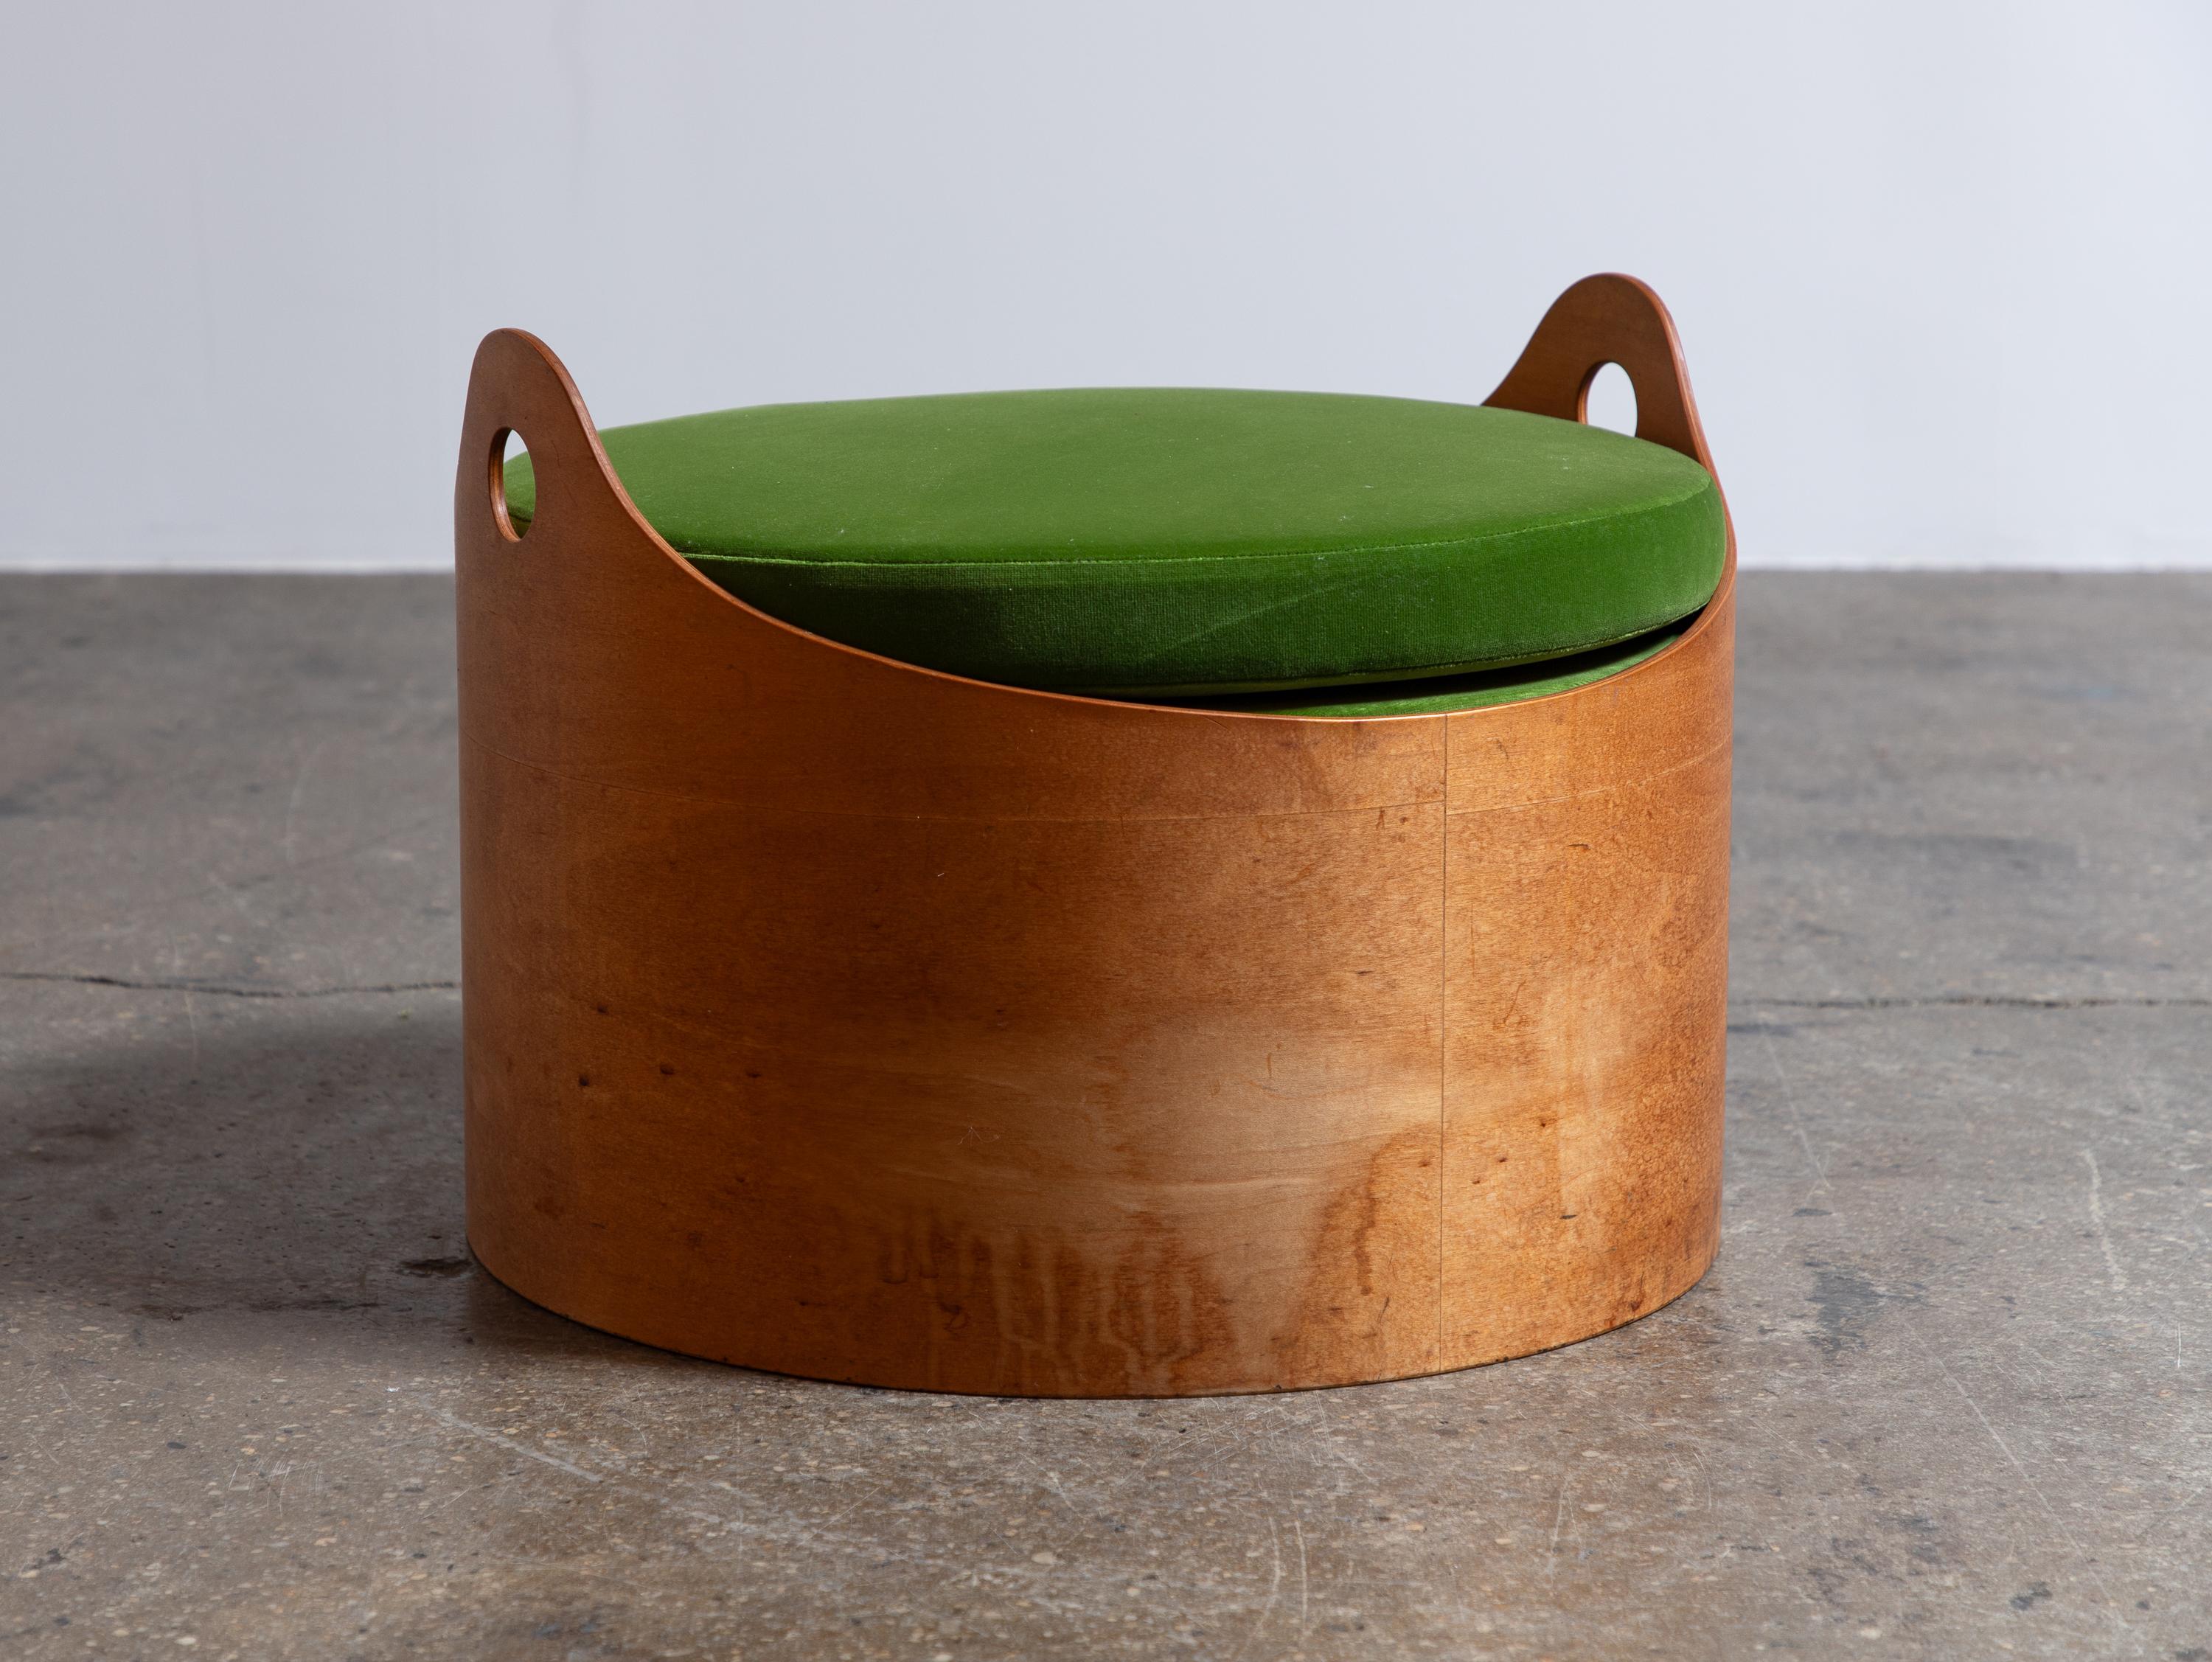 Pouf courbé moderniste avec coussin en velours, conçu par l'architecte Leandre Poisson. Le pouf est composé d'une base incurvée en contreplaqué finie avec deux charmantes poignées. Nous avons ajouté un coussin rond en velours de coton vert gazon.